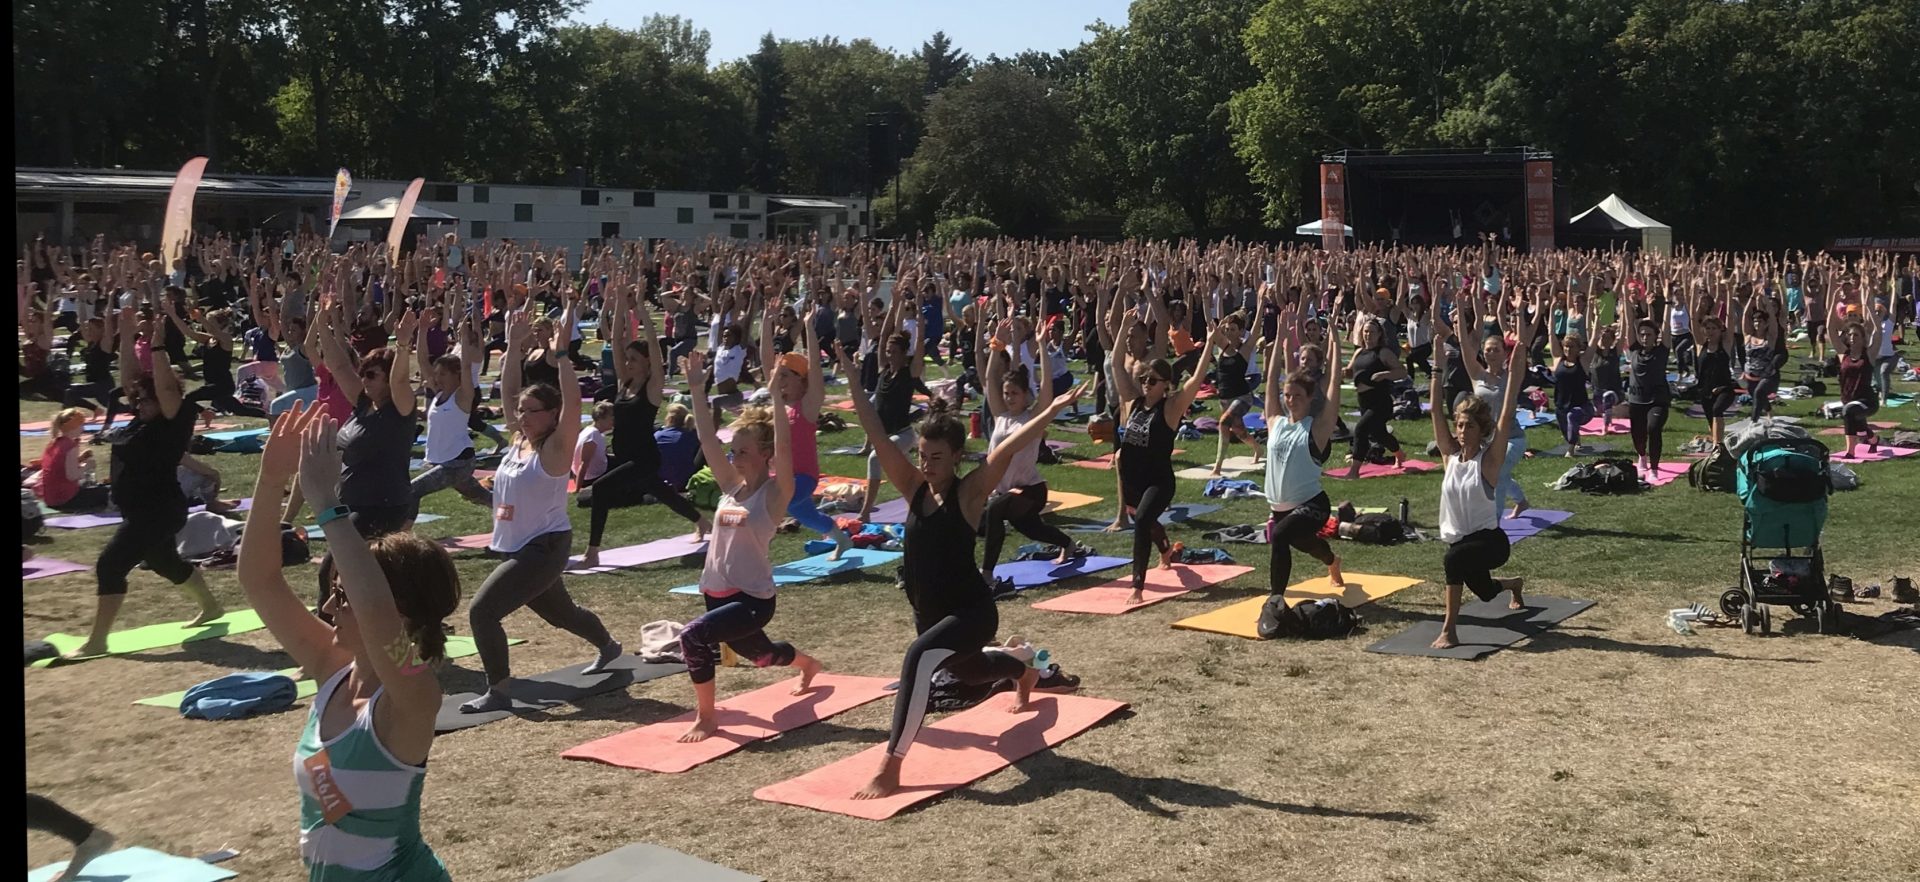 Yoga und Nerds – wie passt das zusammen?